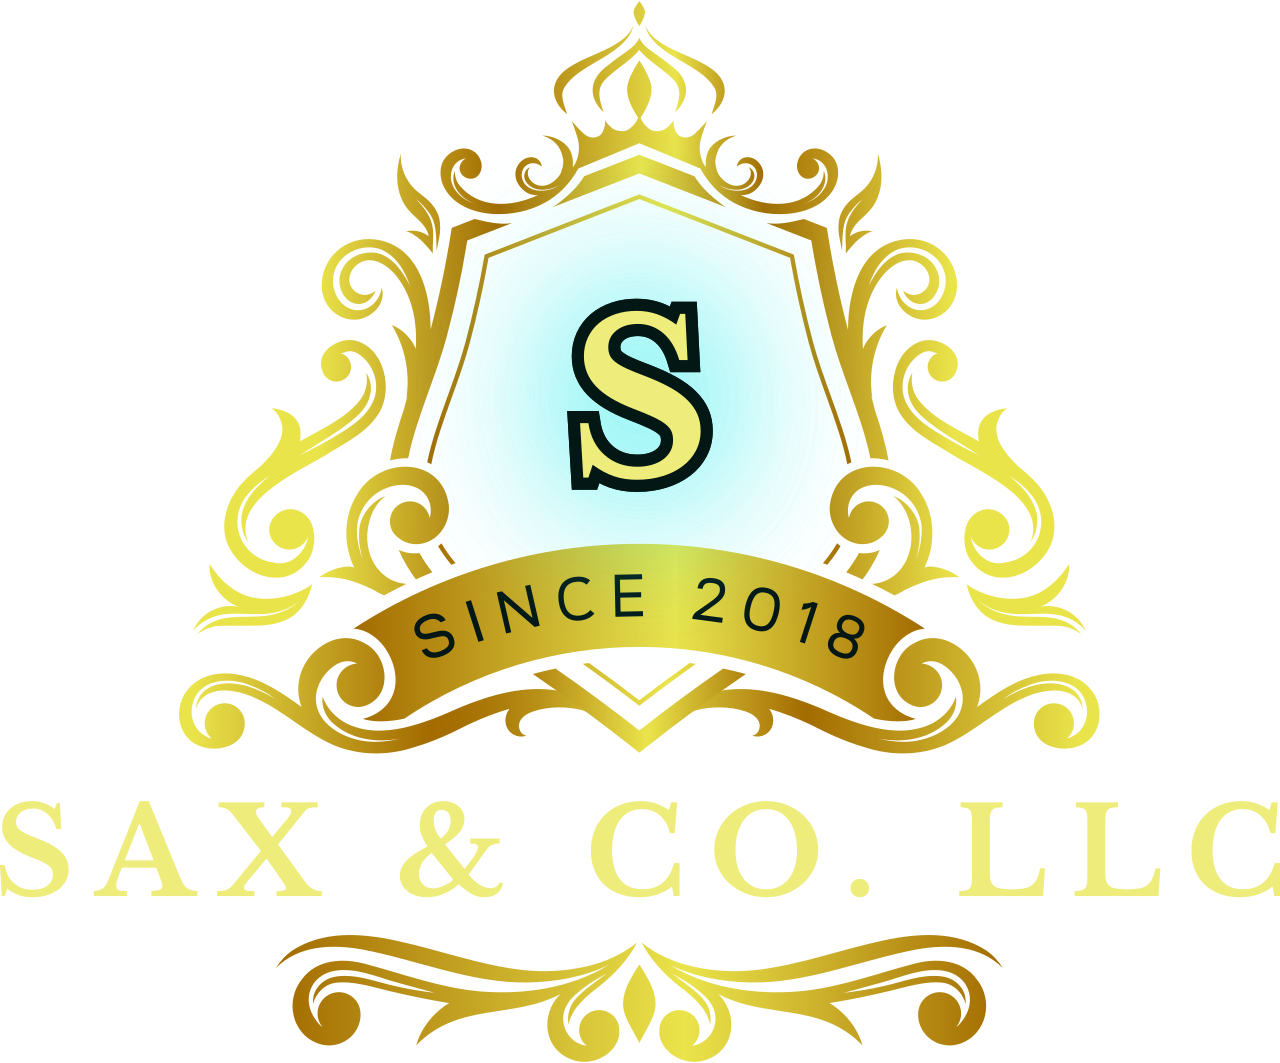 Sax & Co. LLC's logo